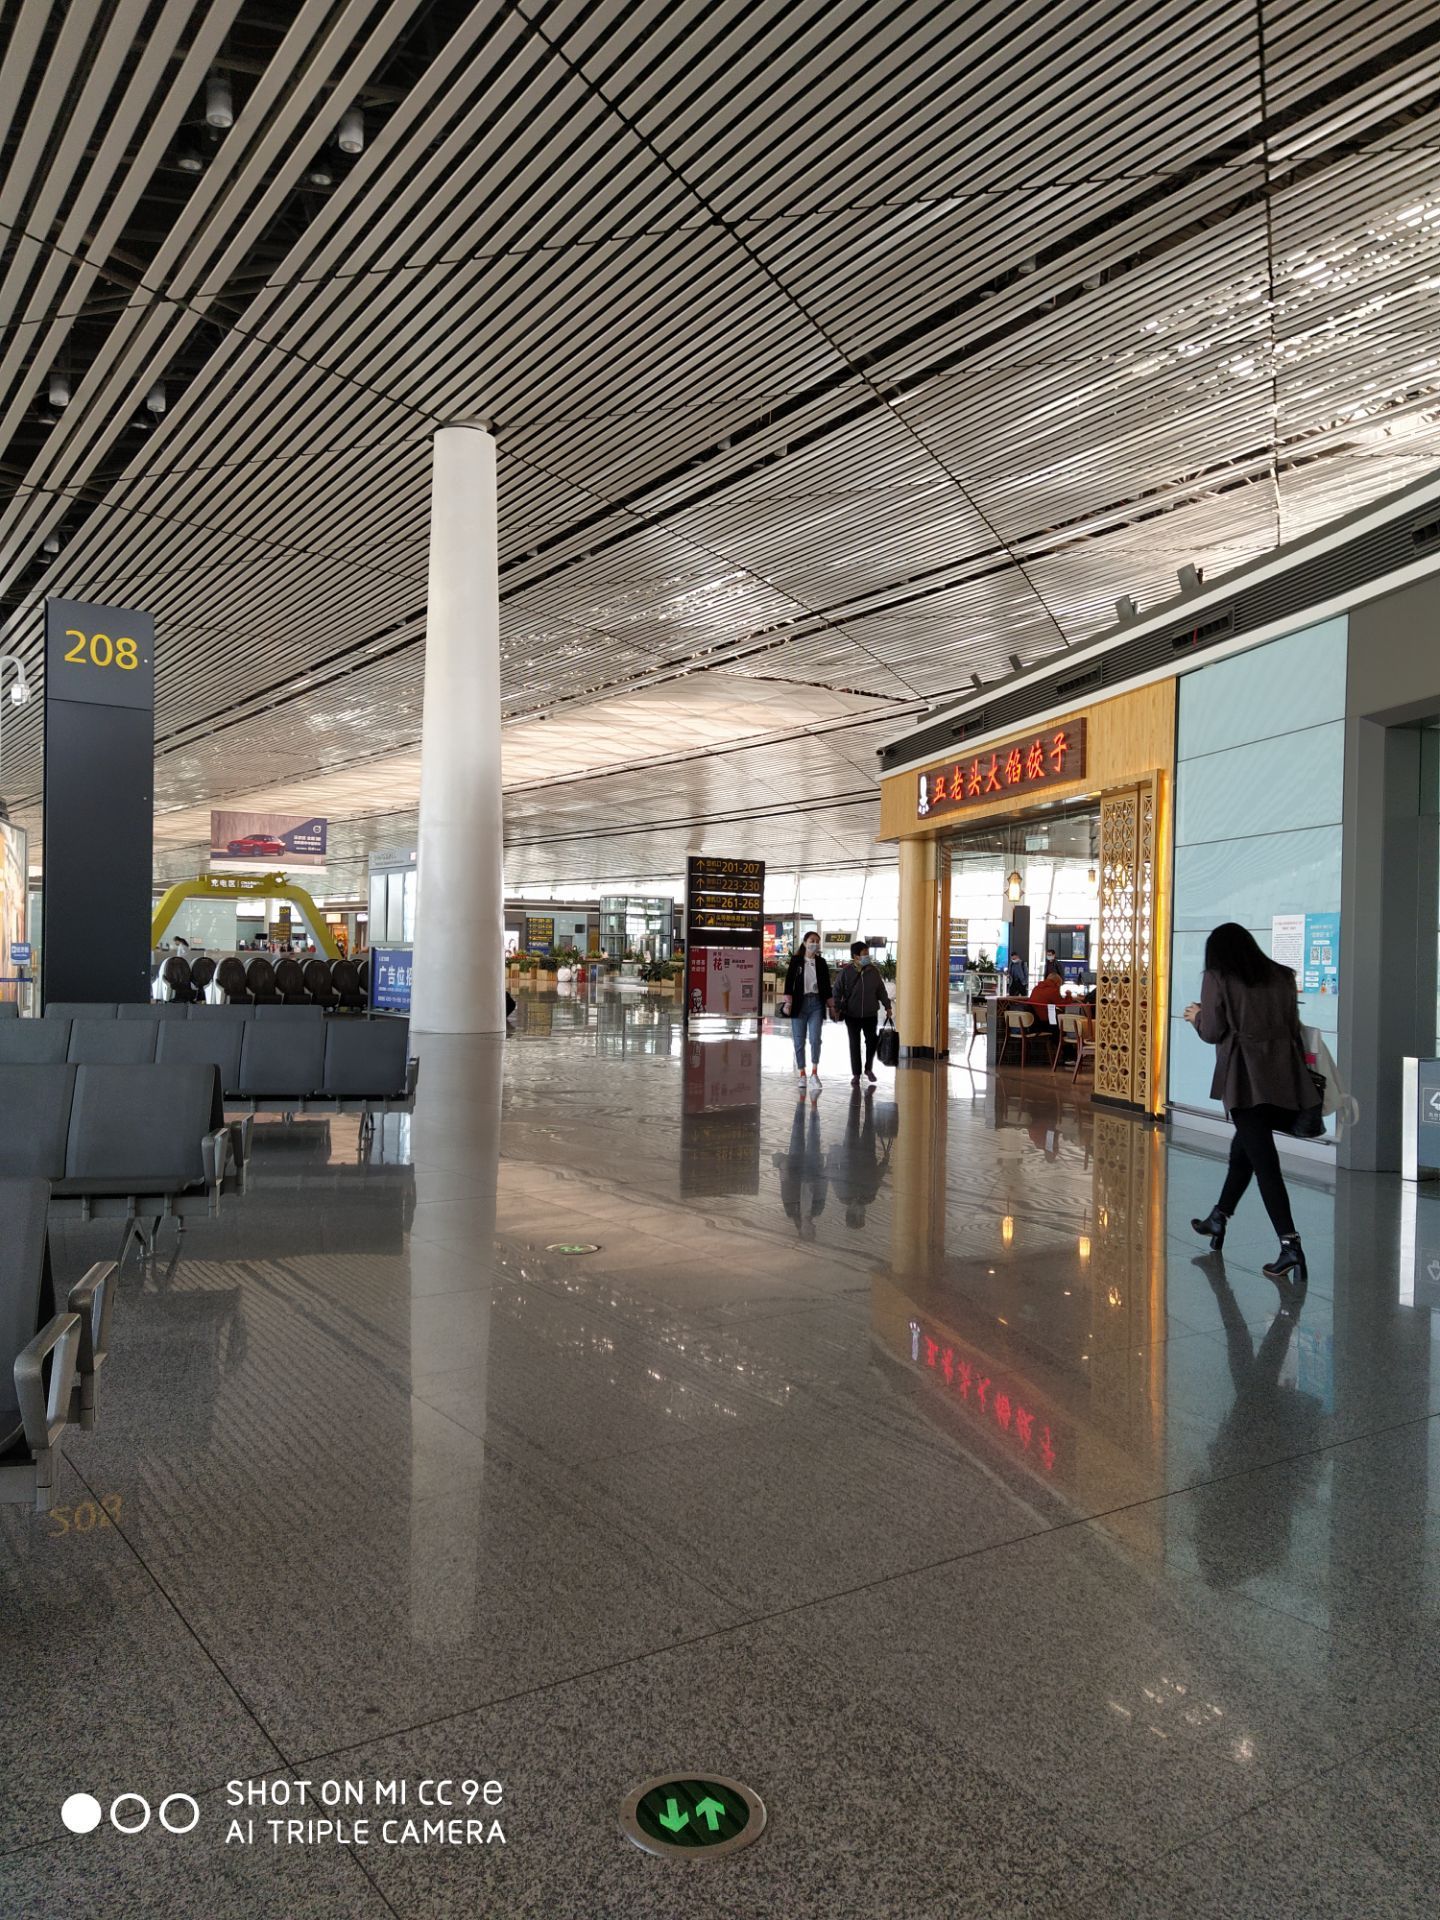 天津滨海机场图片_天津机场t2航站楼平面图 - 电影天堂